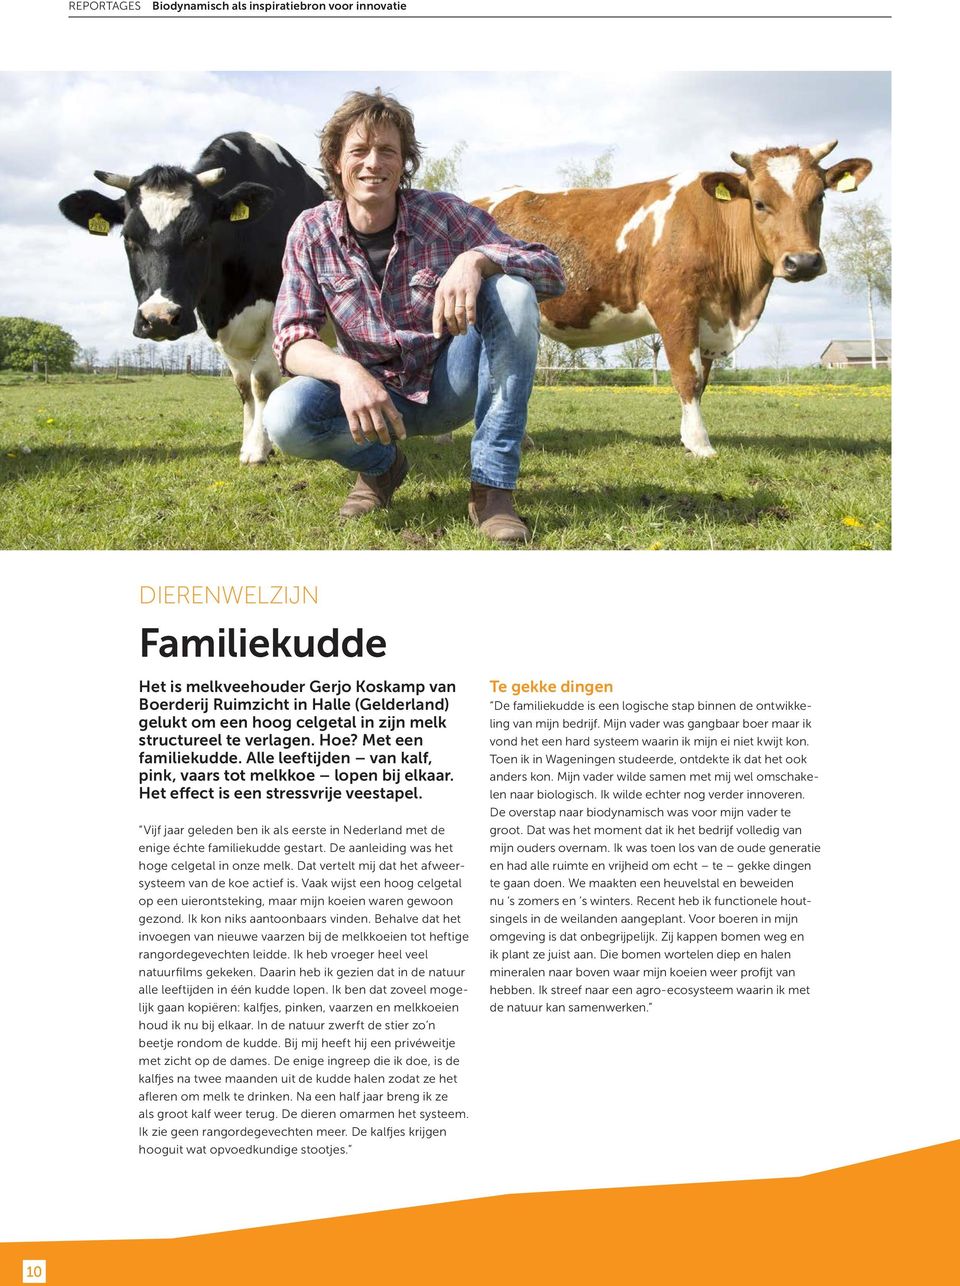 Vijf jaar geleden ben ik als eerste in Nederland met de enige échte familiekudde gestart. De aanleiding was het hoge celgetal in onze melk. Dat vertelt mij dat het afweersysteem van de koe actief is.